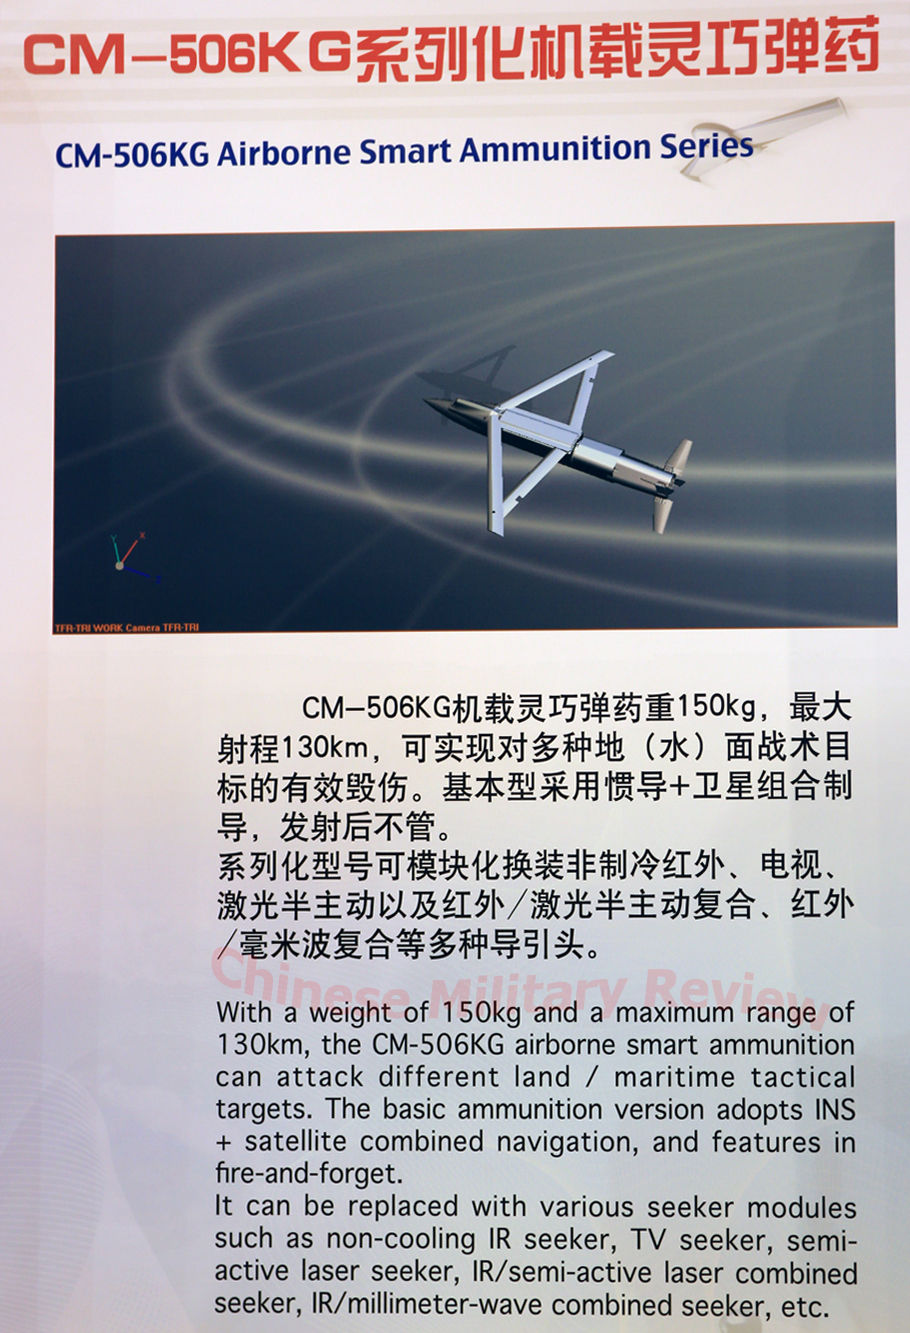 JF-17 Thunder FC-1 J-10 FC-20 J-31 J-20 J-11Cvbsgh ii Small Diameter Bomb (SDB) china paf exportpound kg) precision-guided glide bombplaaf (2)